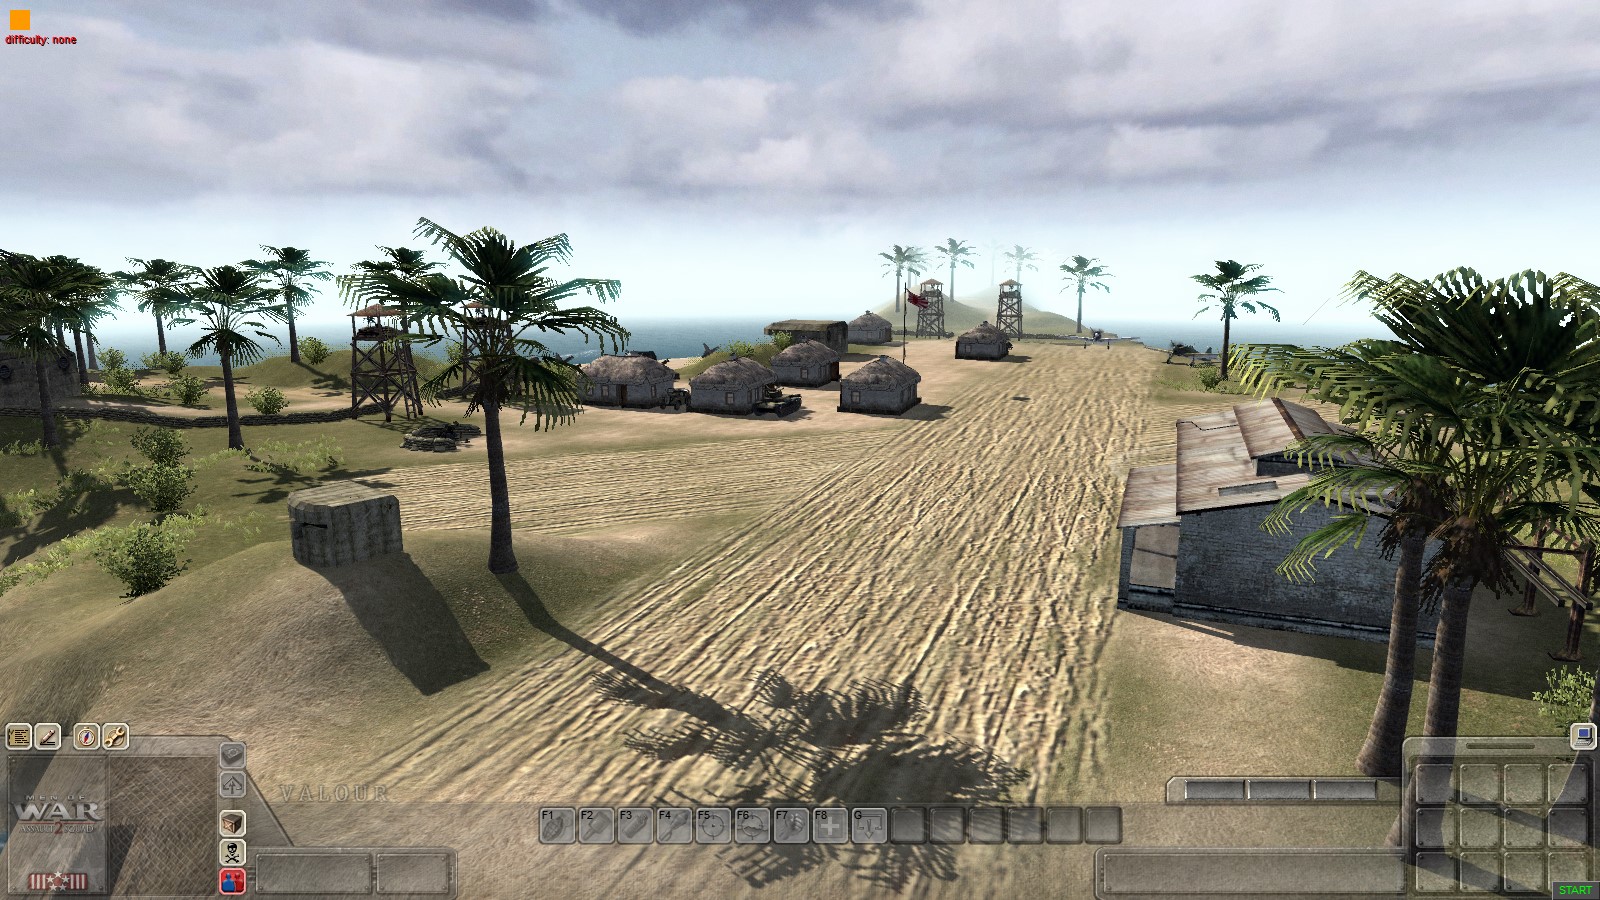 battlefield 2 maps on release